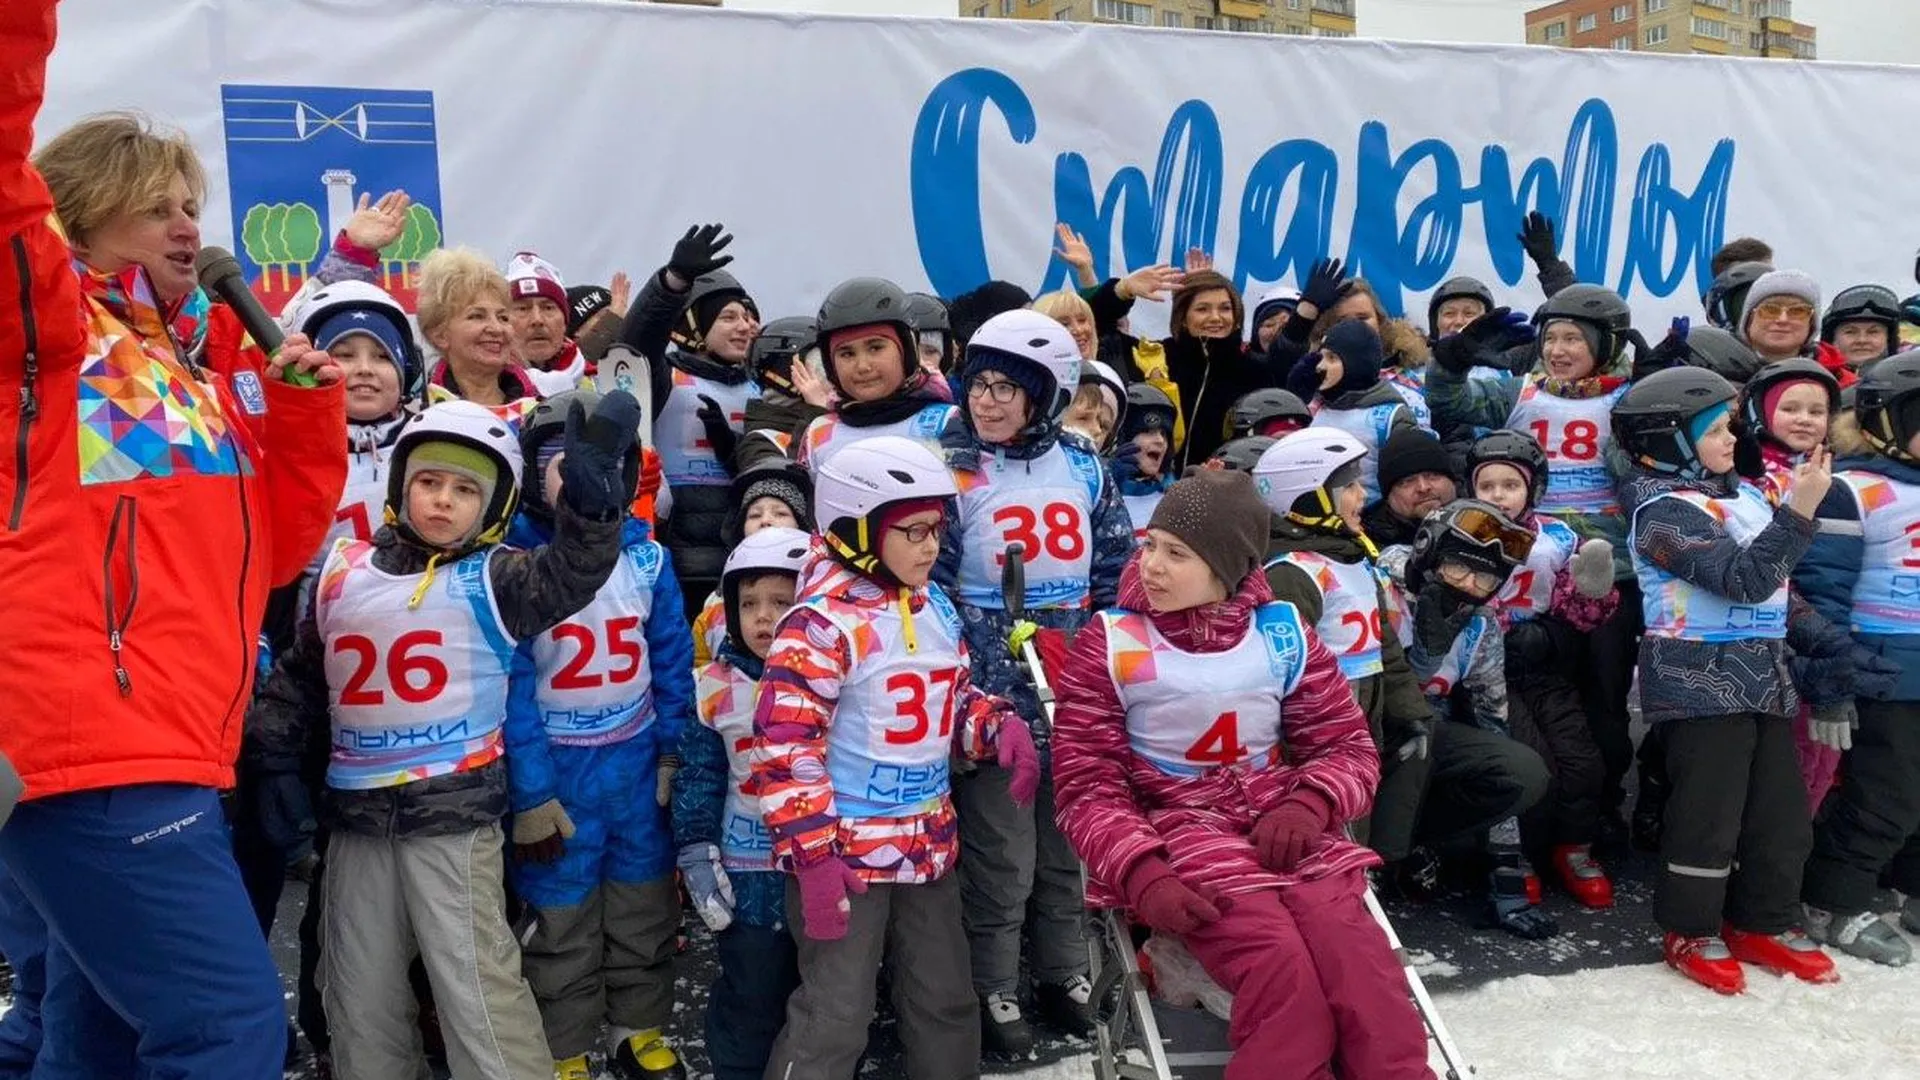 Спорт равных возможностей. Соревнования «Лыжи мечты» для особенных детей стартовали в Красногорске